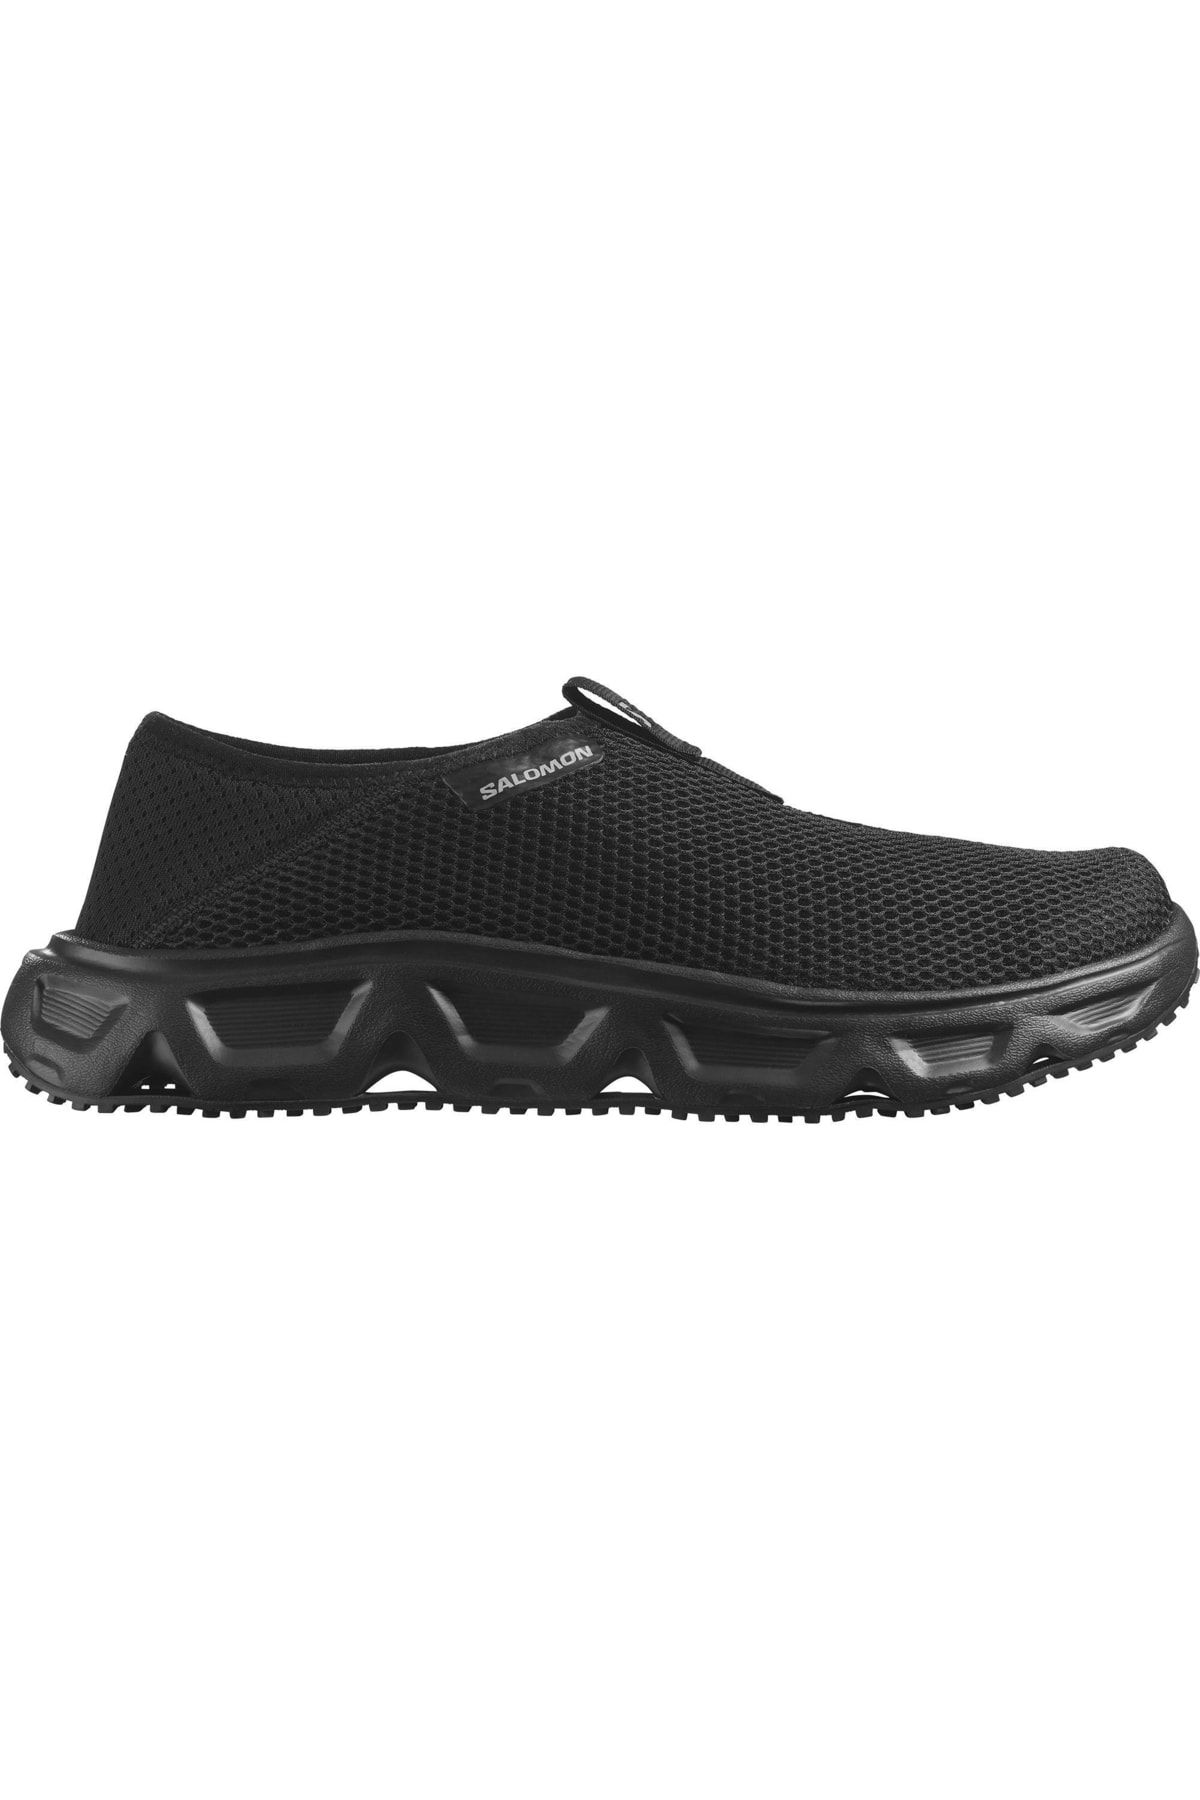 Salomon Reelax Moc 6.0 Erkek Outdoor Ayakkabı Siyah L47111500